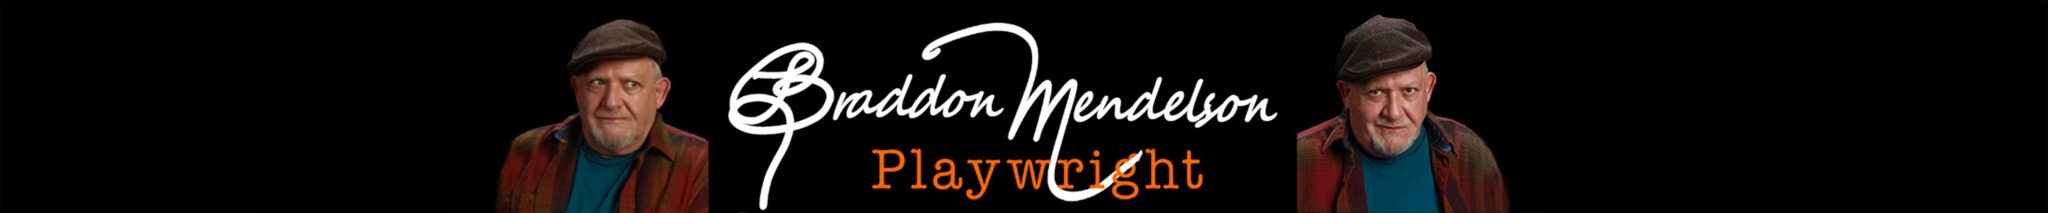 website header for Braddon Mendelson